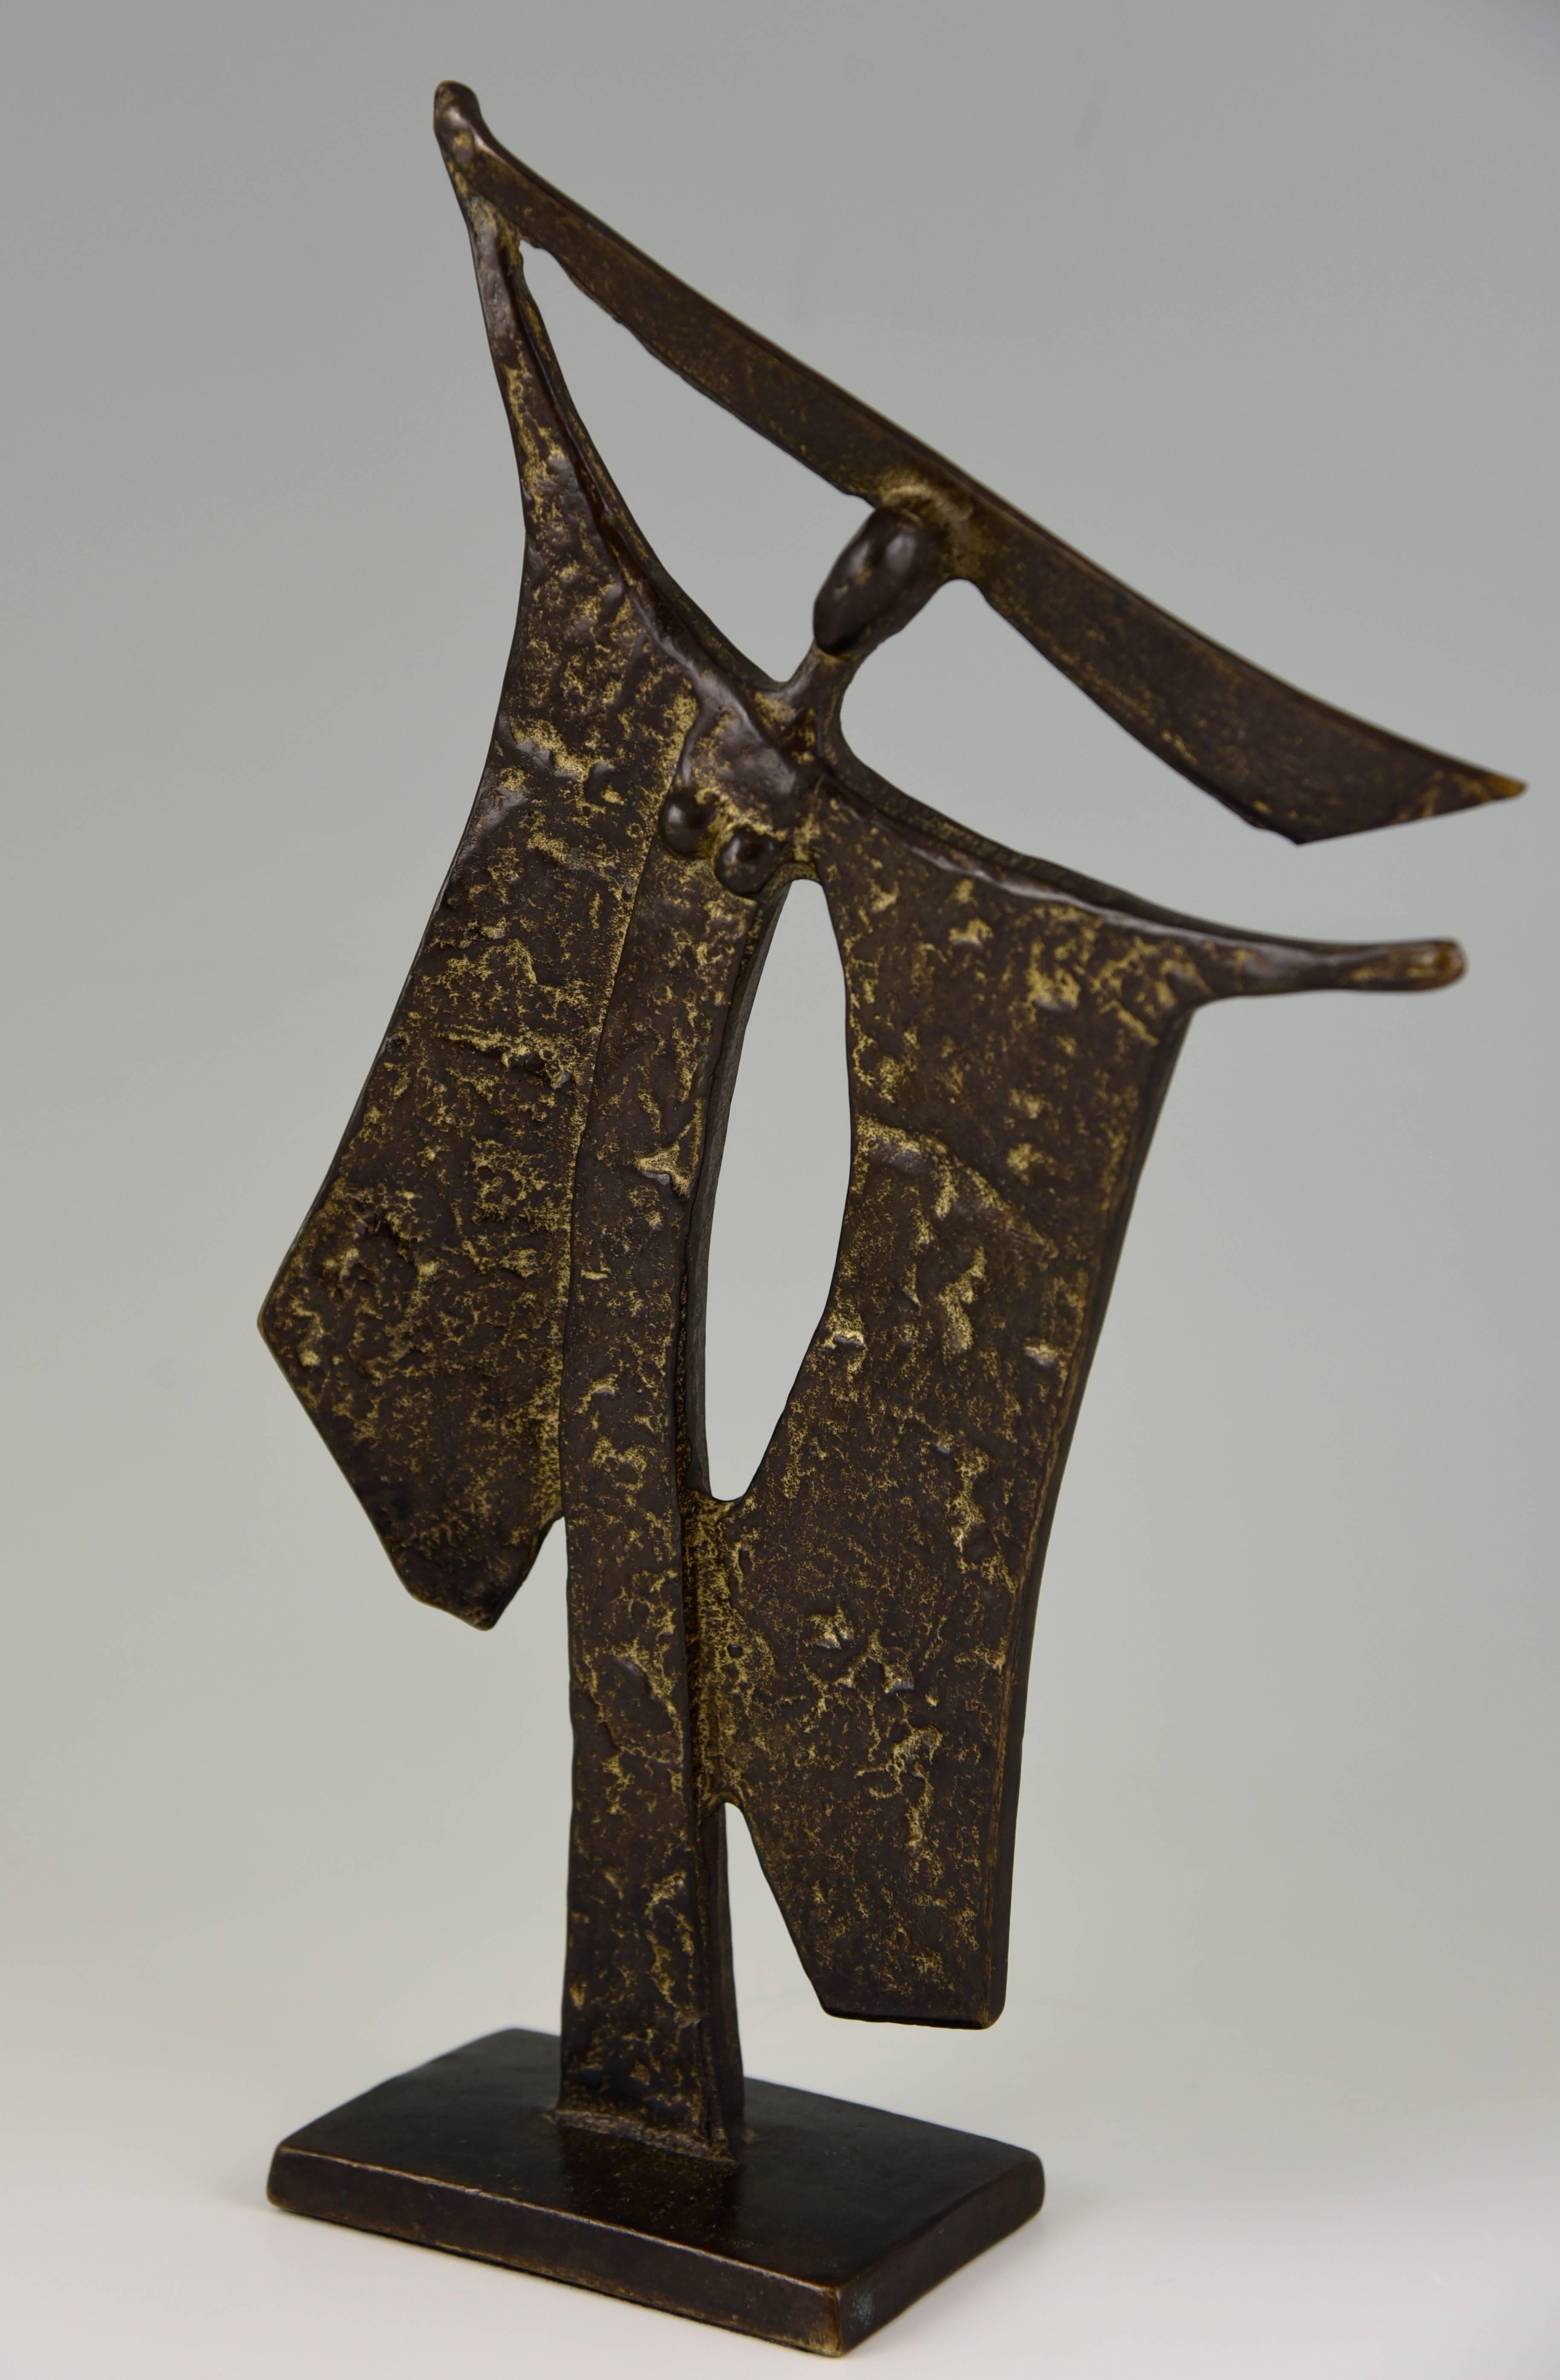 Elegant bronze of the 1960s by Ugo Cara, Trieste 1908-2004.
Sculptor and designer, worked with Gio Ponti.
Information:
Museum Ugo Cara, Via Roma 9, 34015 Muggia, Italy. 

Artist/ Maker: Ugo Cara.
Signature/ Marks: Ugor Cara, 580/1000.
Style: